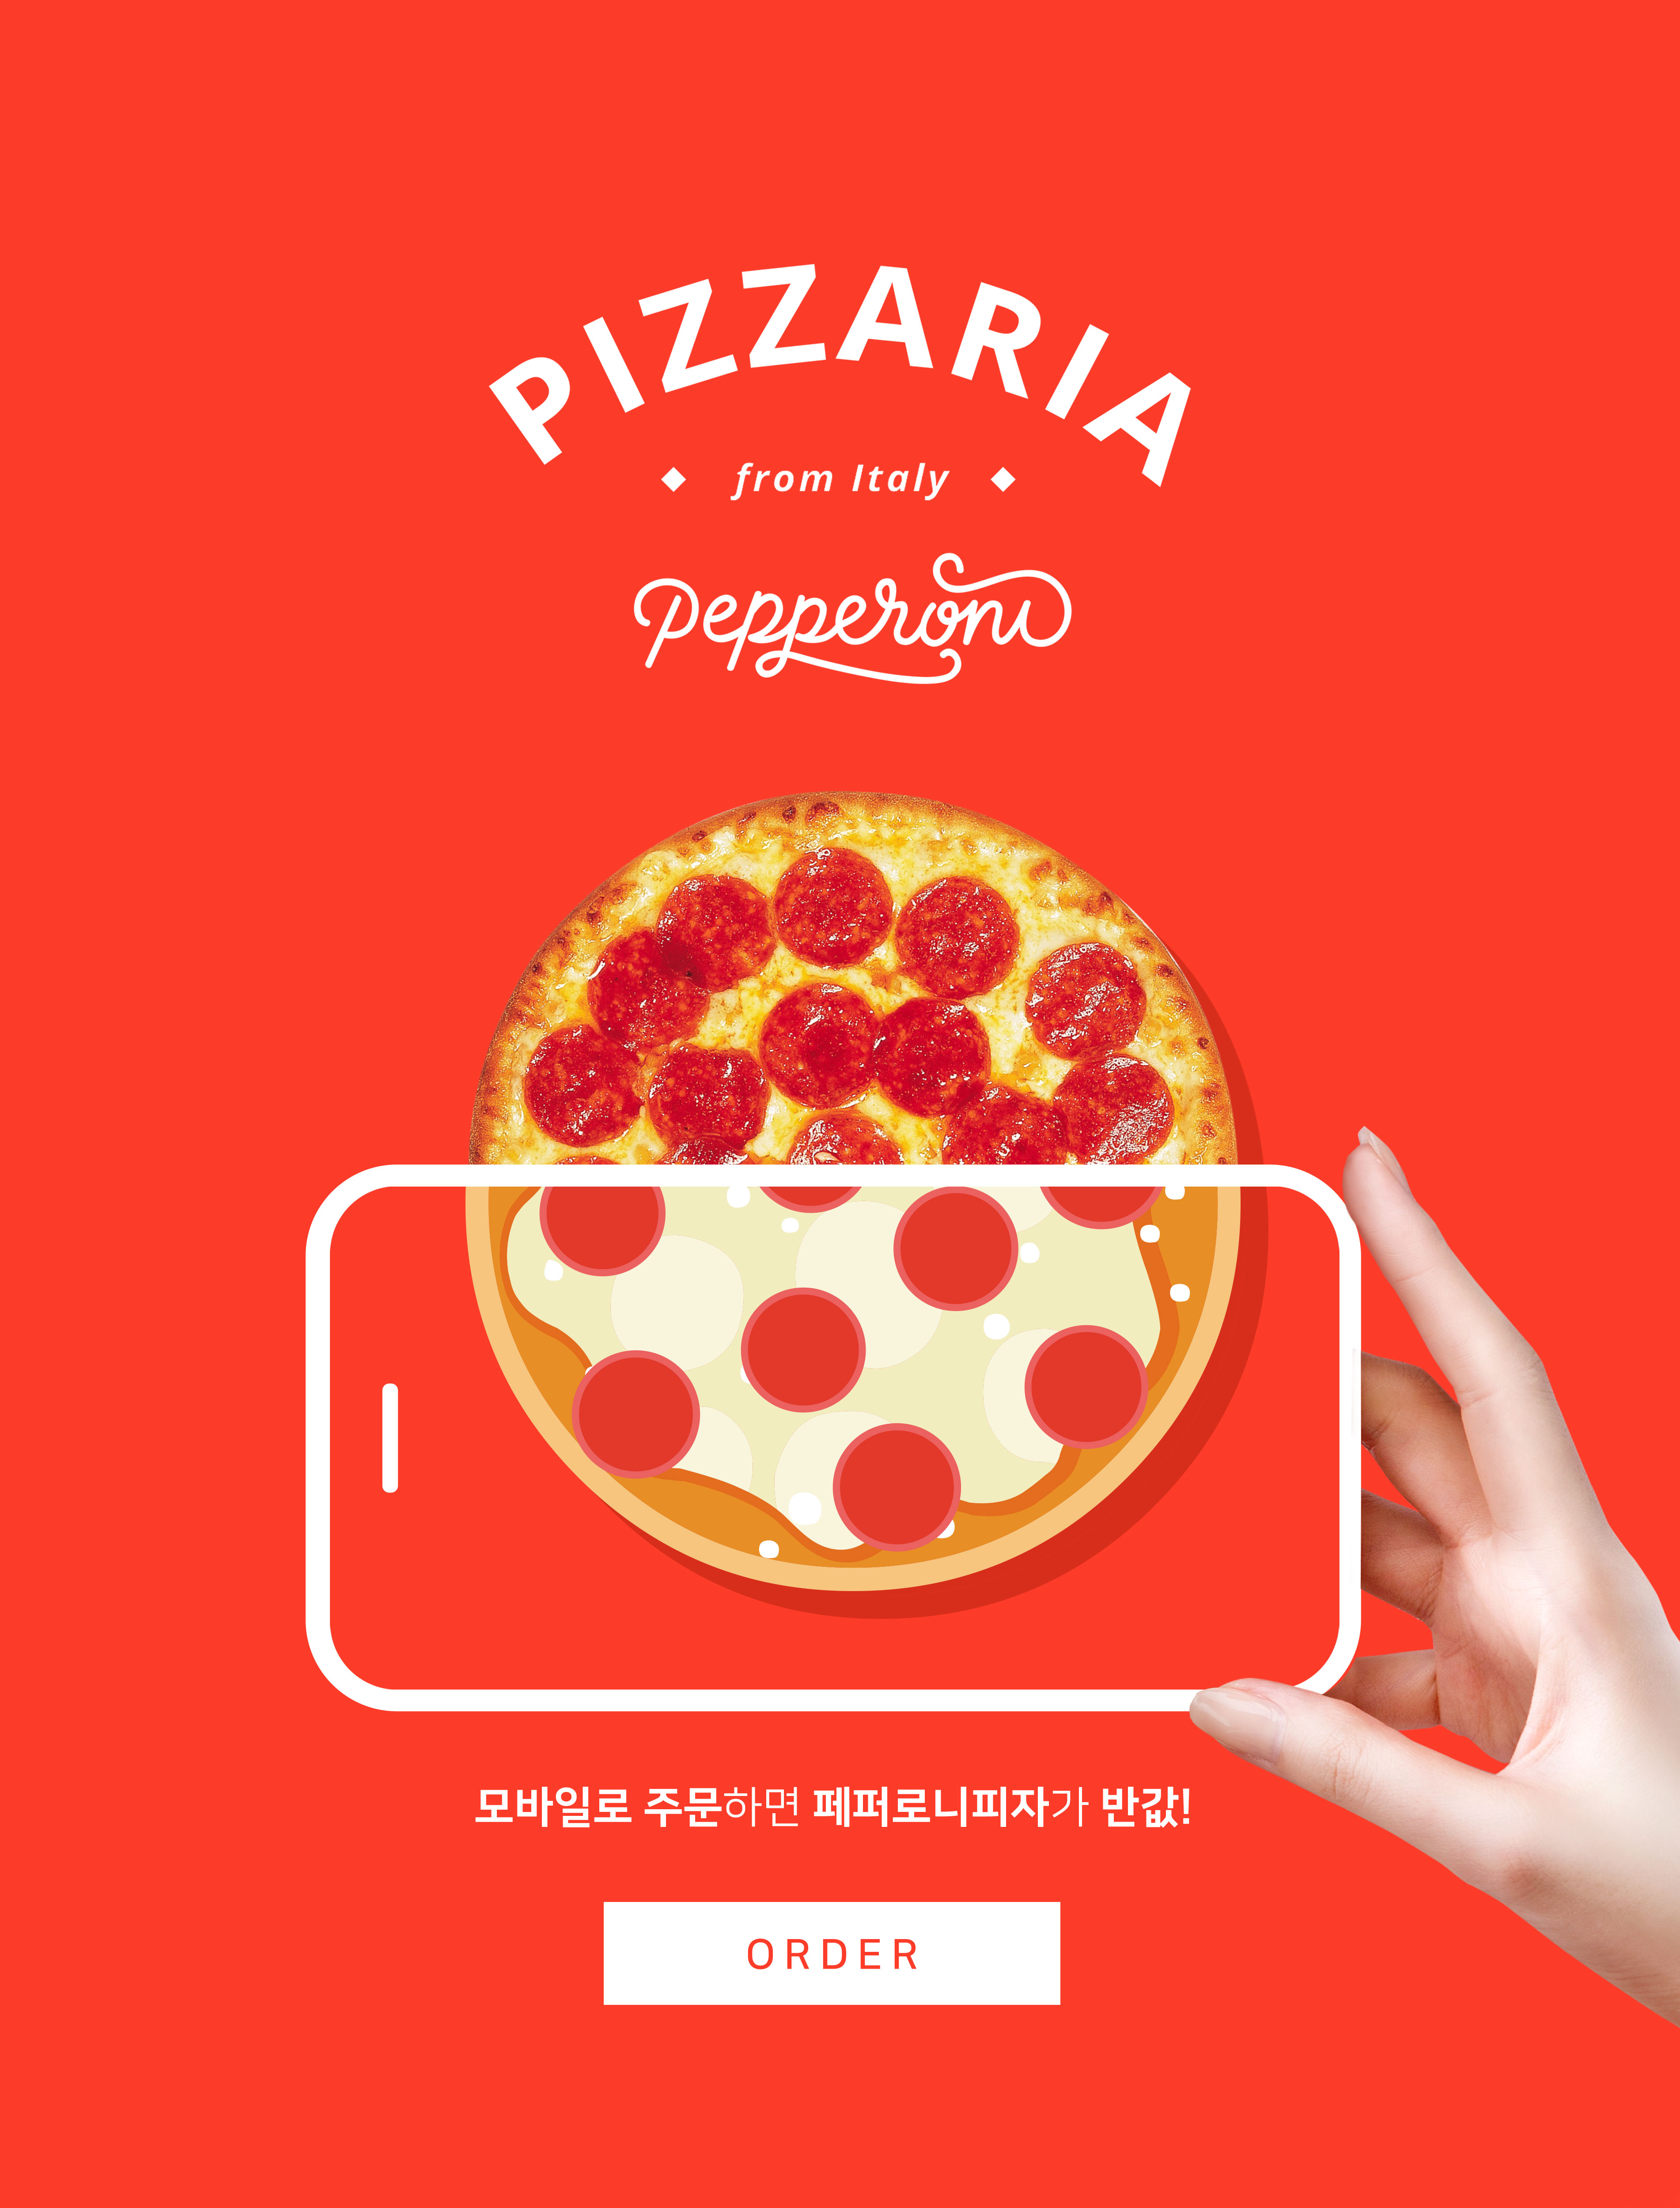 手机订购披萨半价活动宣传海报PSD素材非凡图库精选素材插图